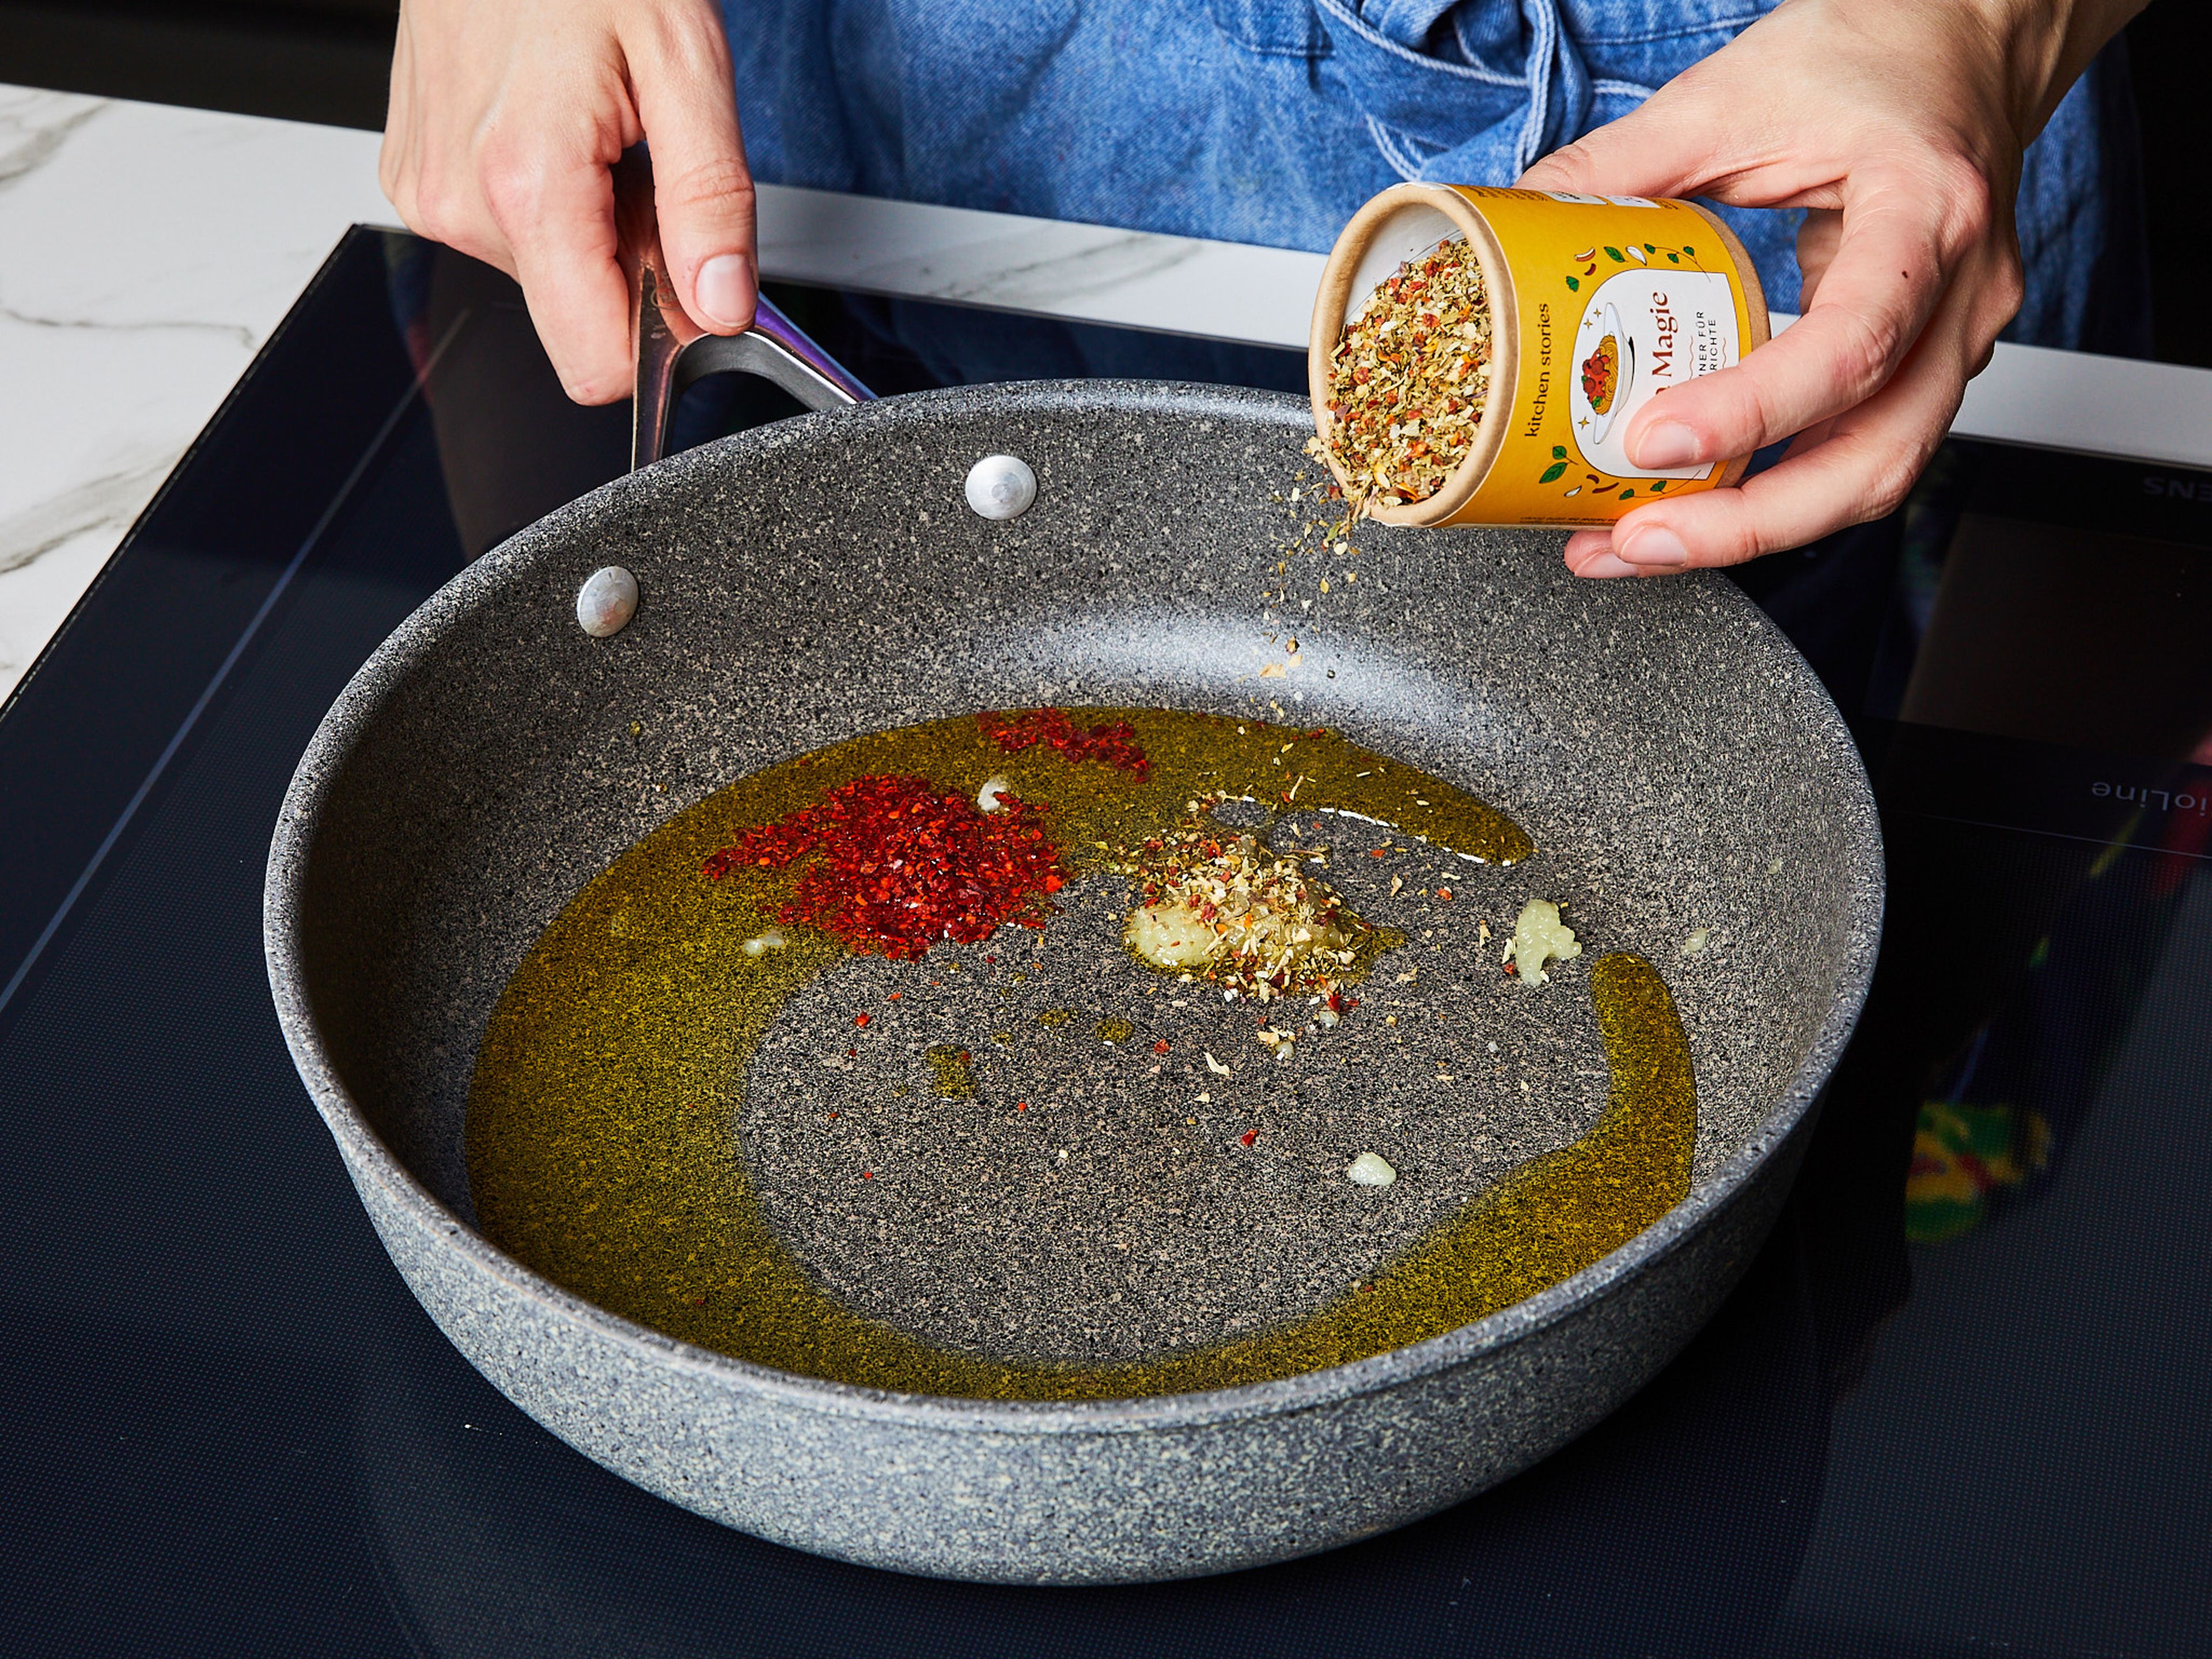 Für die Tomatenbrühe Wasser zum Kochen bringen, Tomatenmark hinzufügen und verrühren. Mit Salz und Pfeffer würzen und warm halten. Knoblauch schälen und fein reiben. In einer großen beschichteten Pfanne Olivenöl bei mittlerer bis hoher Temperatur erhitzen, Knoblauch, Chiliflocken und Pasta Magie Gewürzmischung hinzufügen. Alles gut vermengen.